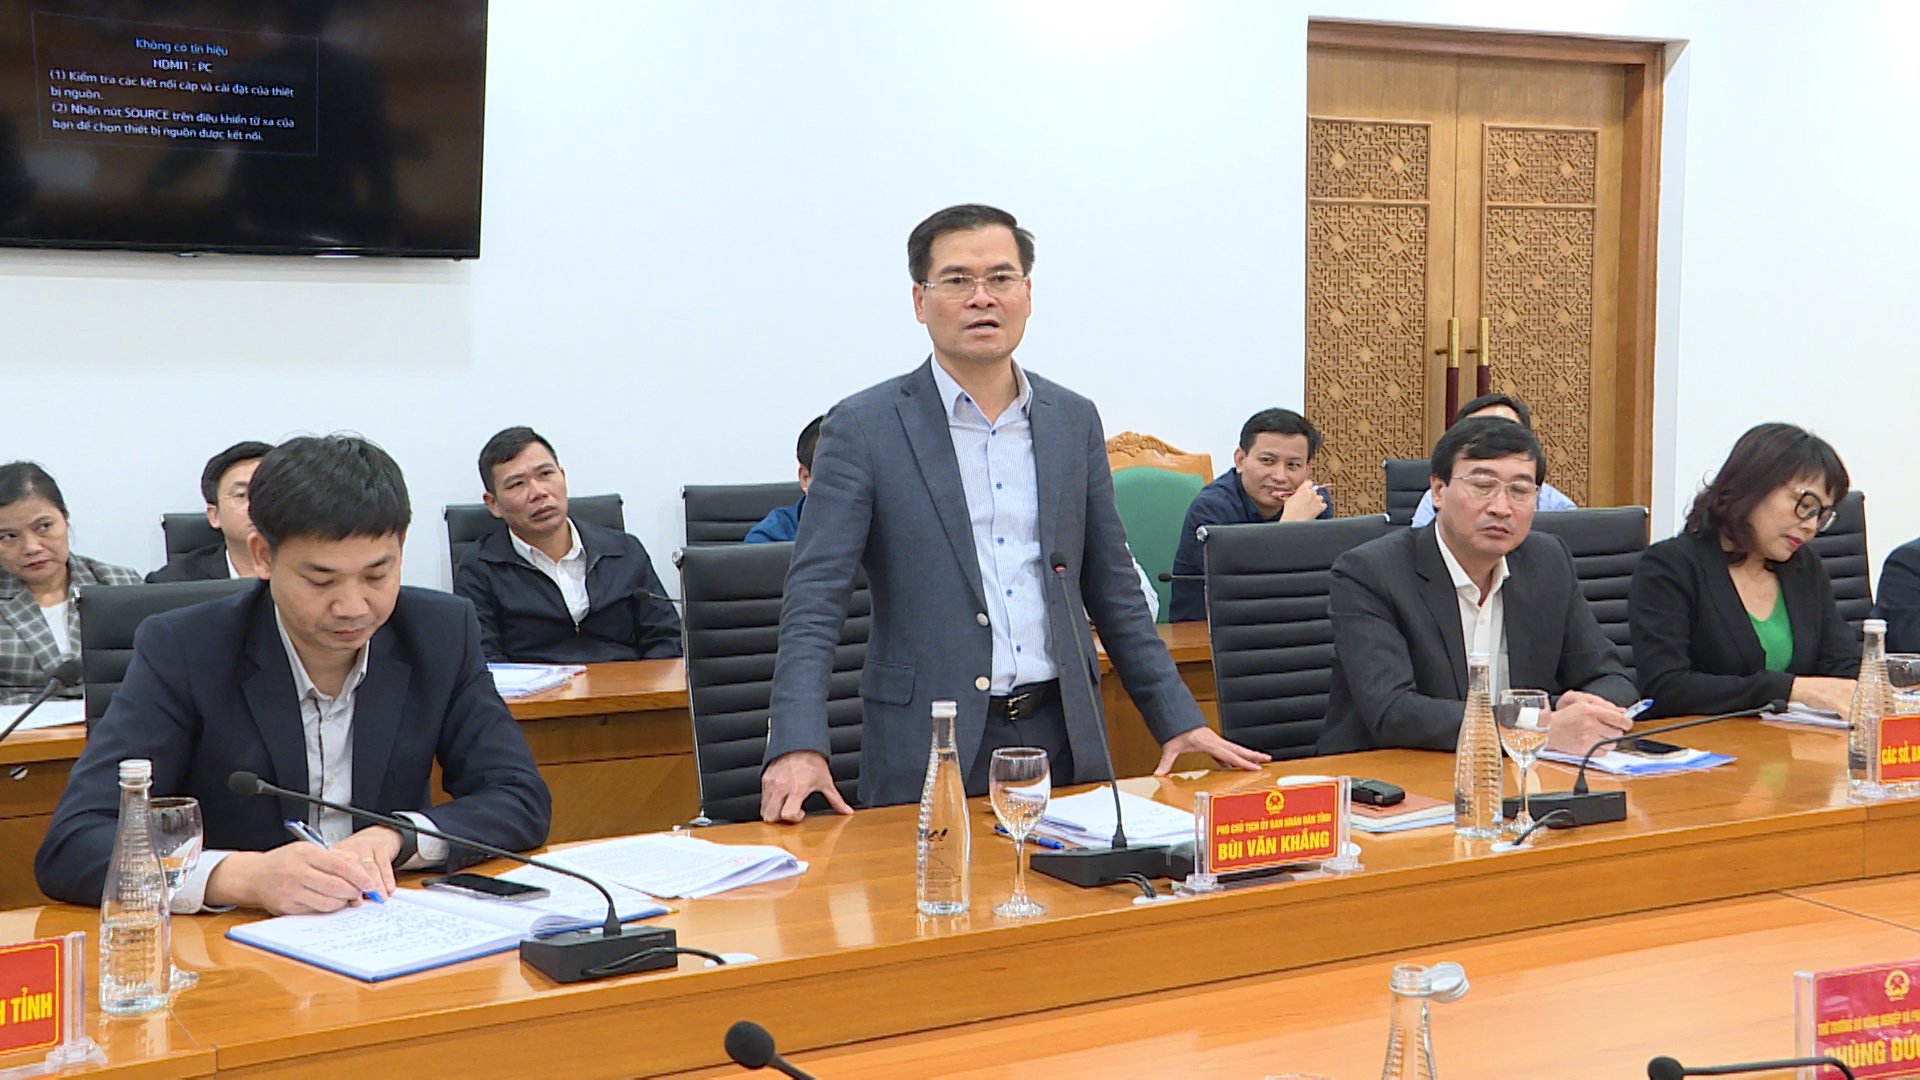 Đồng chí Bùi Văn Khắng, Ủy viên BTV Tỉnh ủy, Phó Chủ tịch UBND tỉnh, phát biểu tại buổi làm việc